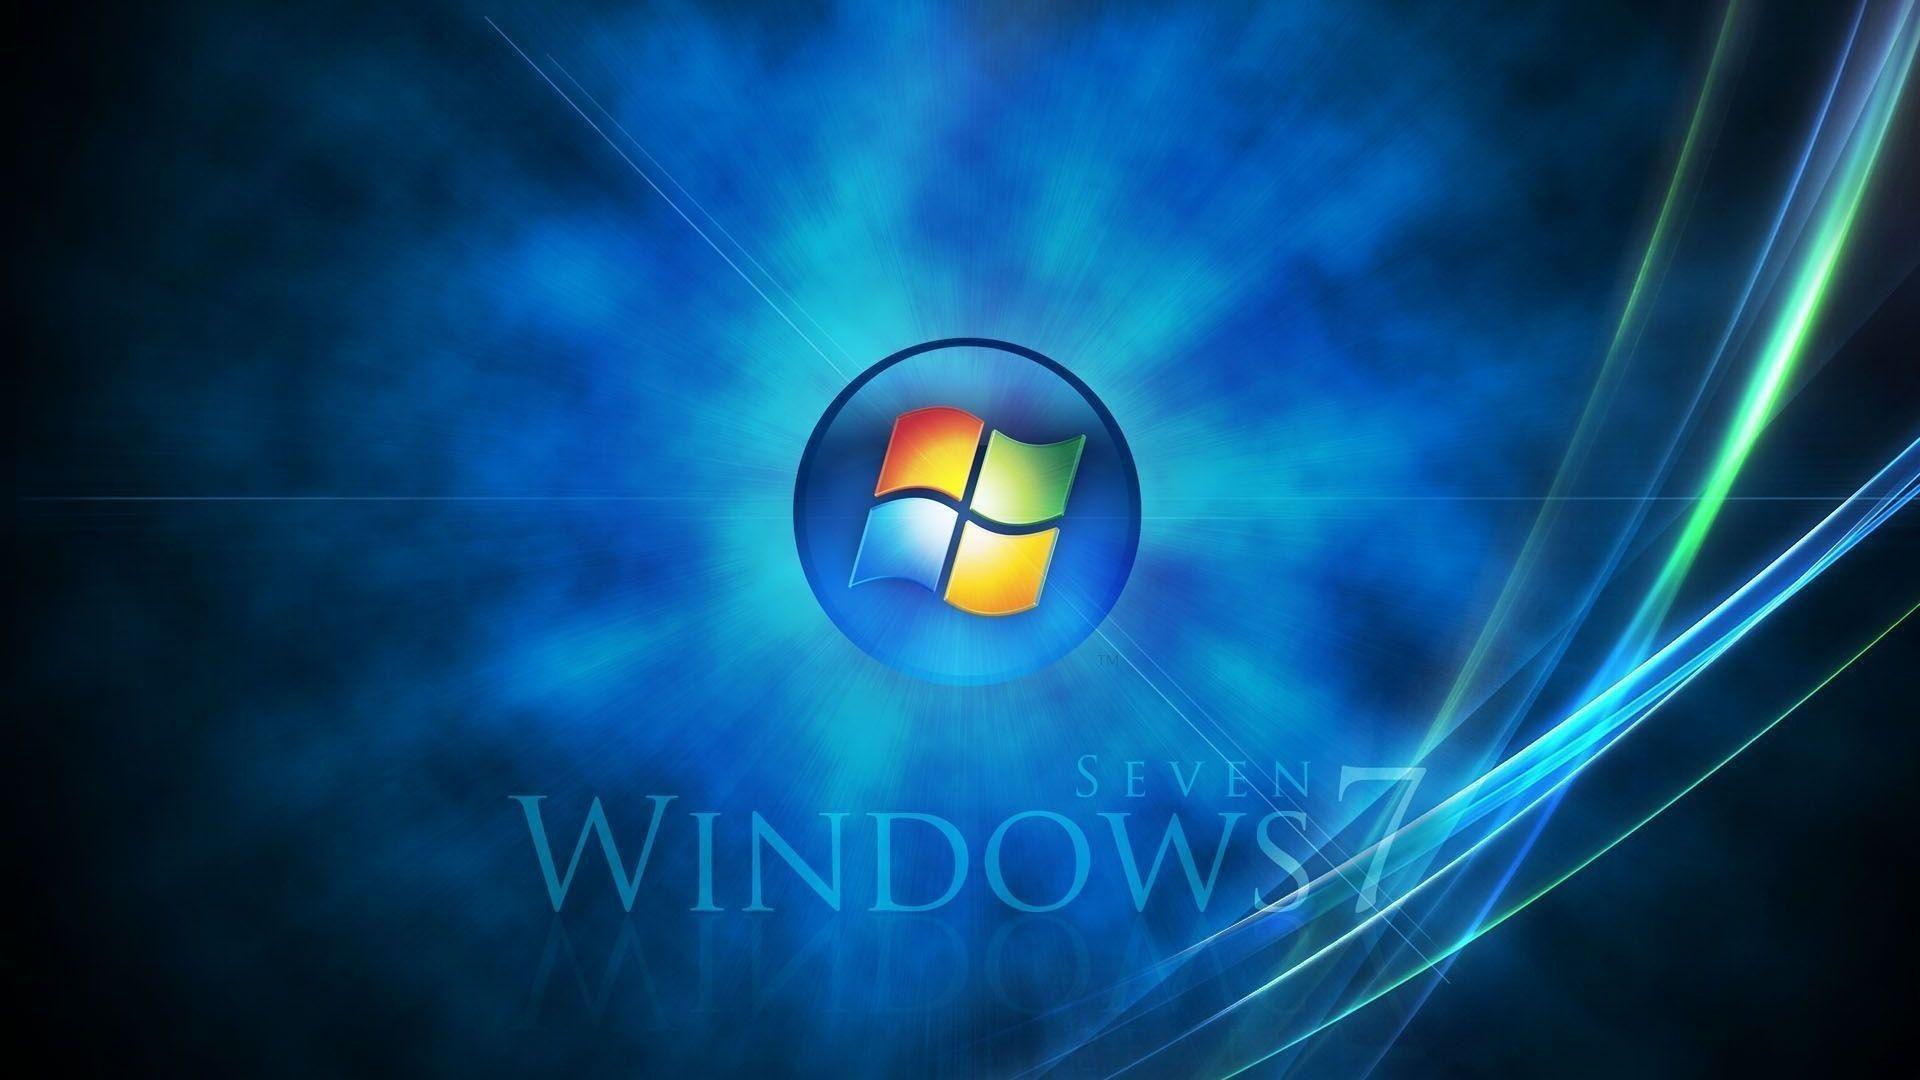 Windows 7 Wallpaper HD 1920x1080